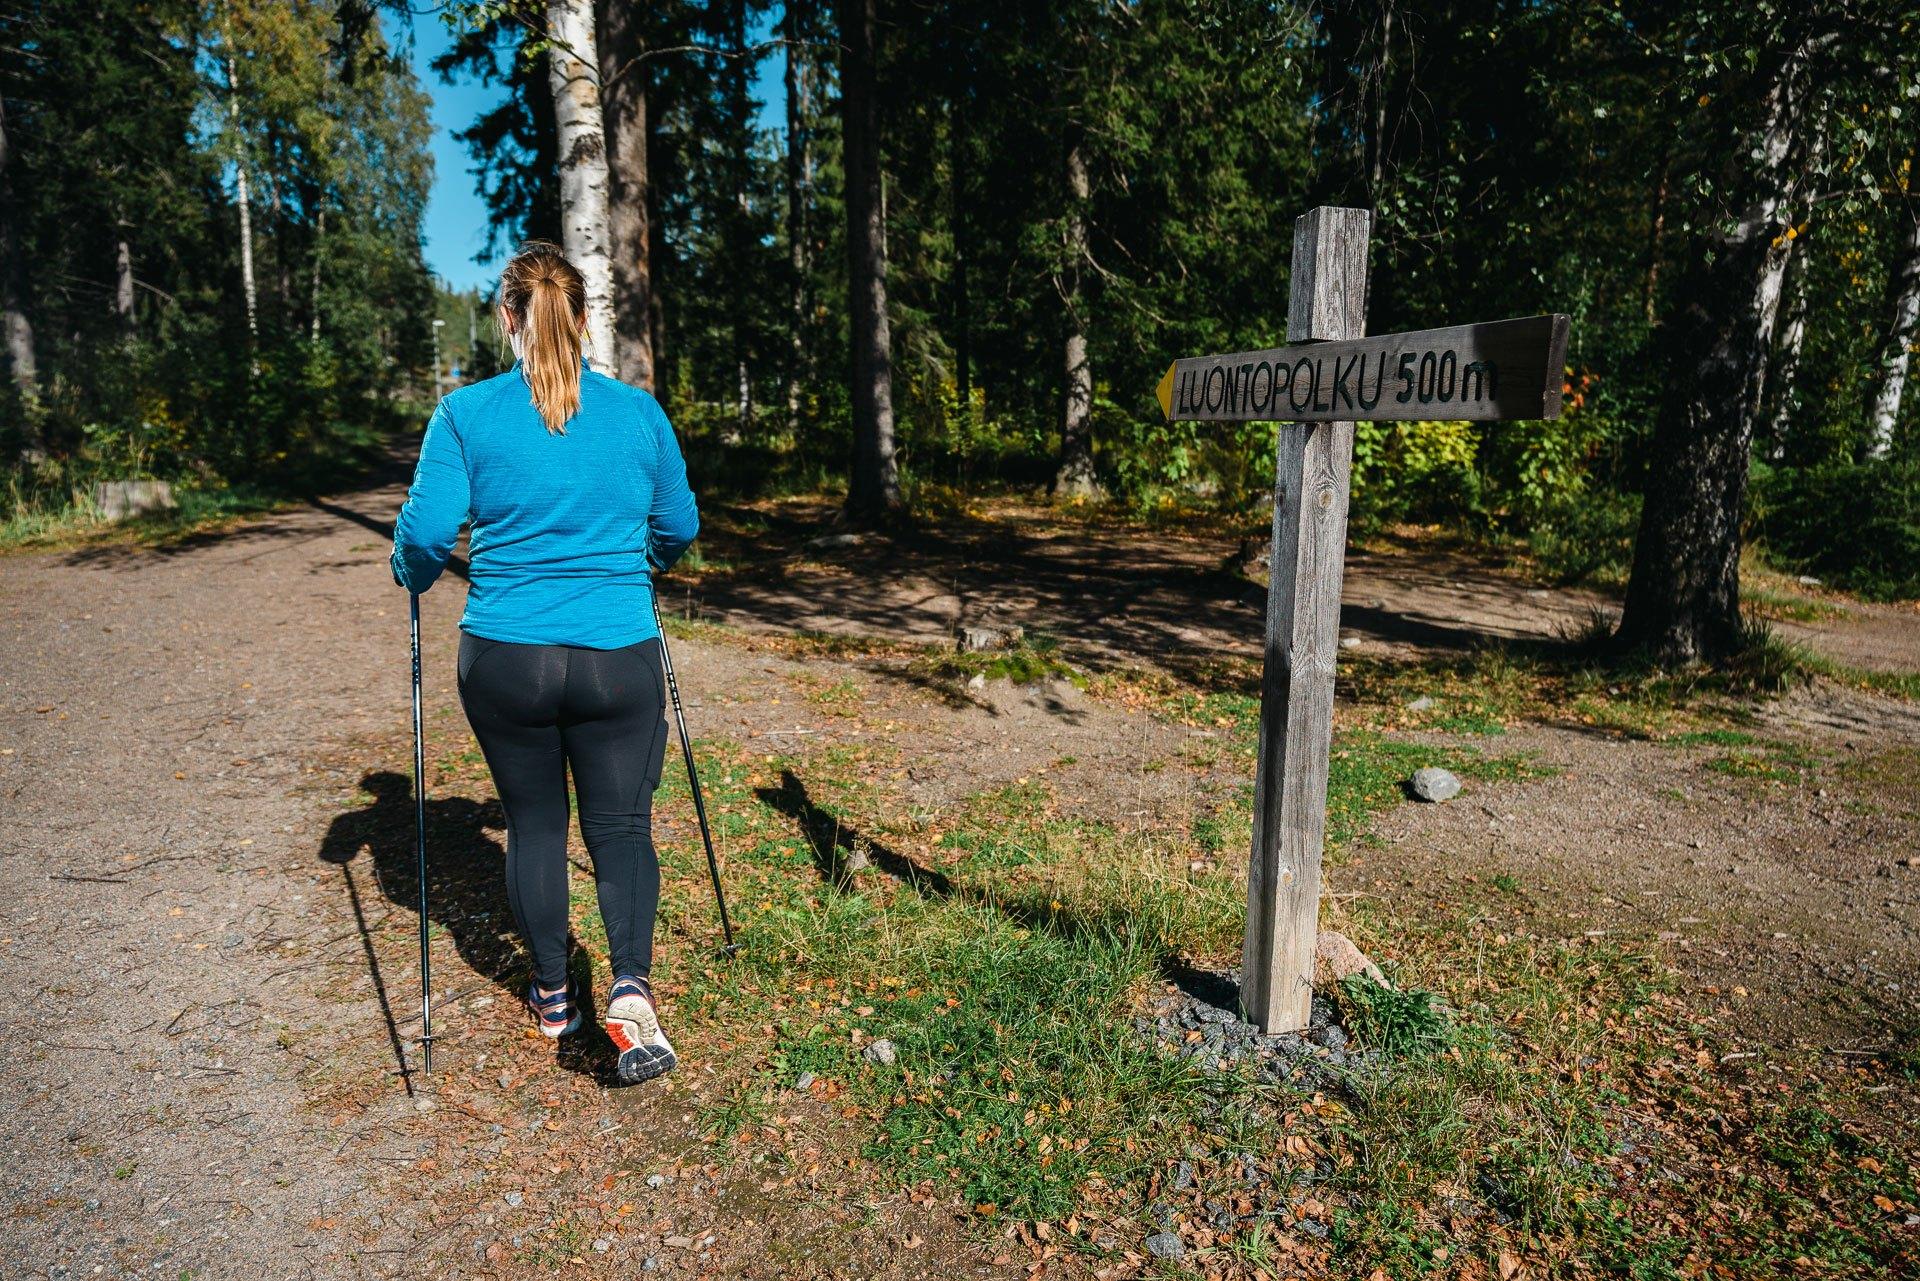 Sauvakävelevä nainen kävelee selin kameraan. Taustalla on metsää ja naisen vieressä on kyltti, jossa lukee Luontopolku 500 m.